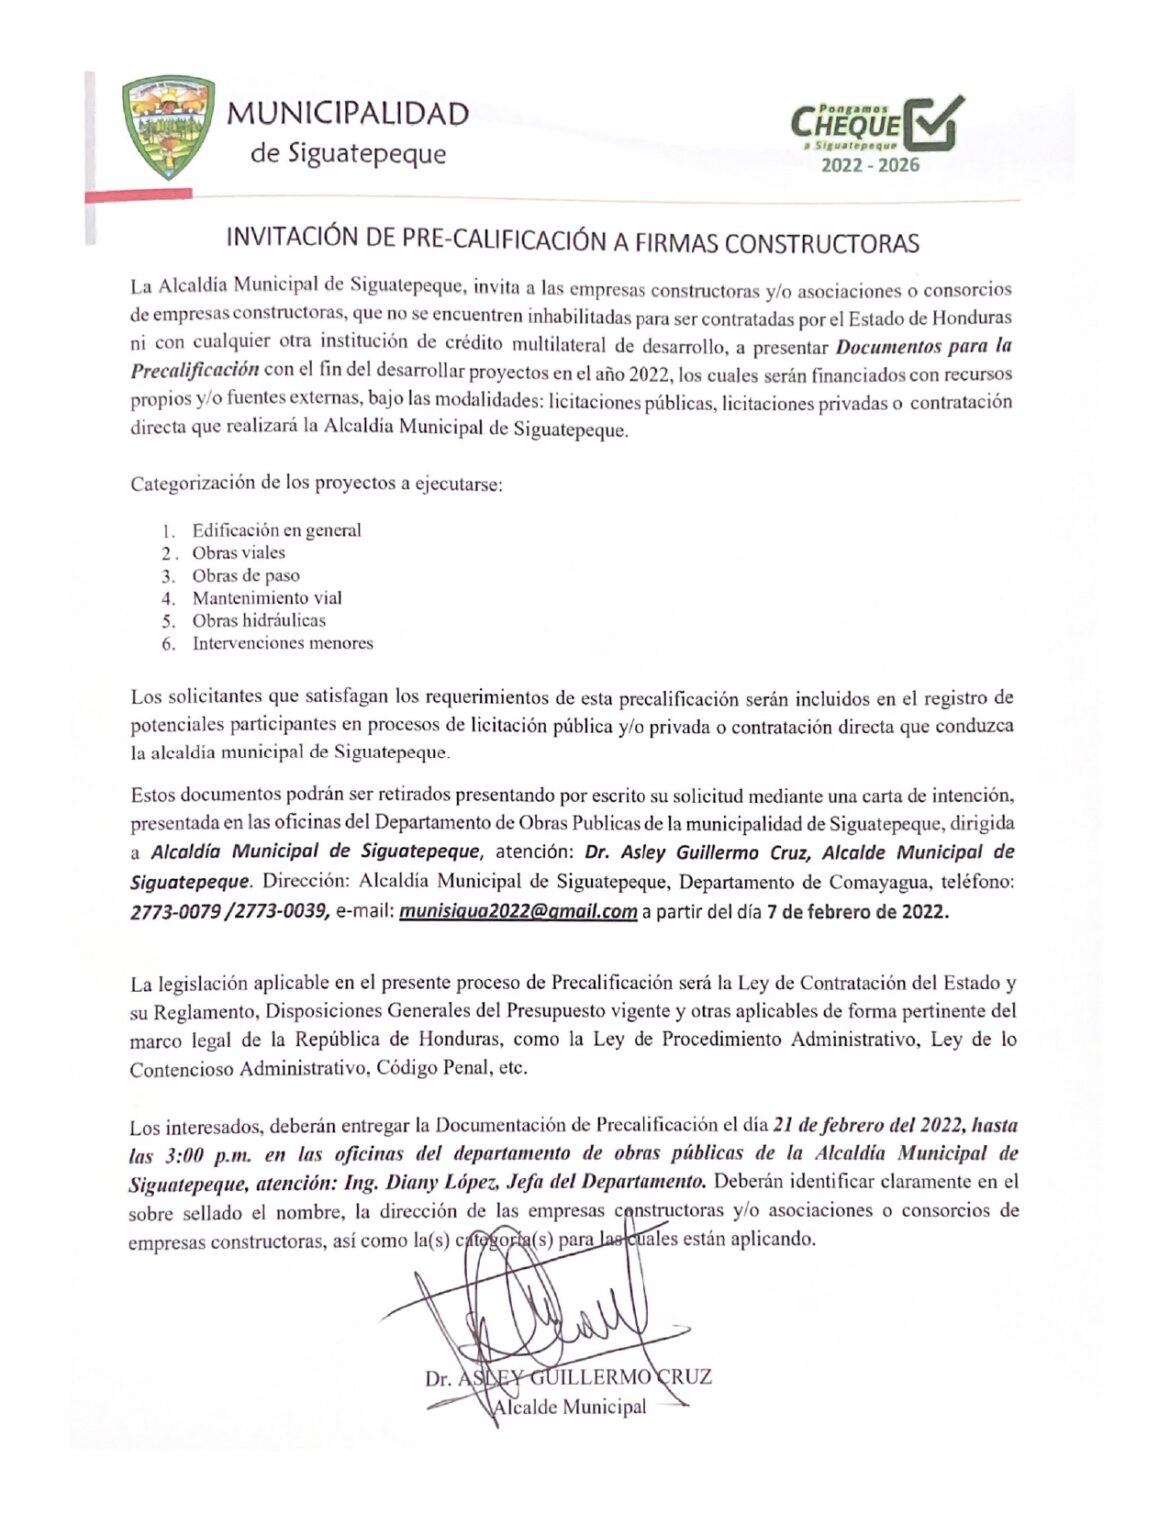 Alcaldía de Siguatepeque invita a pre- calificación a firmas constructoras